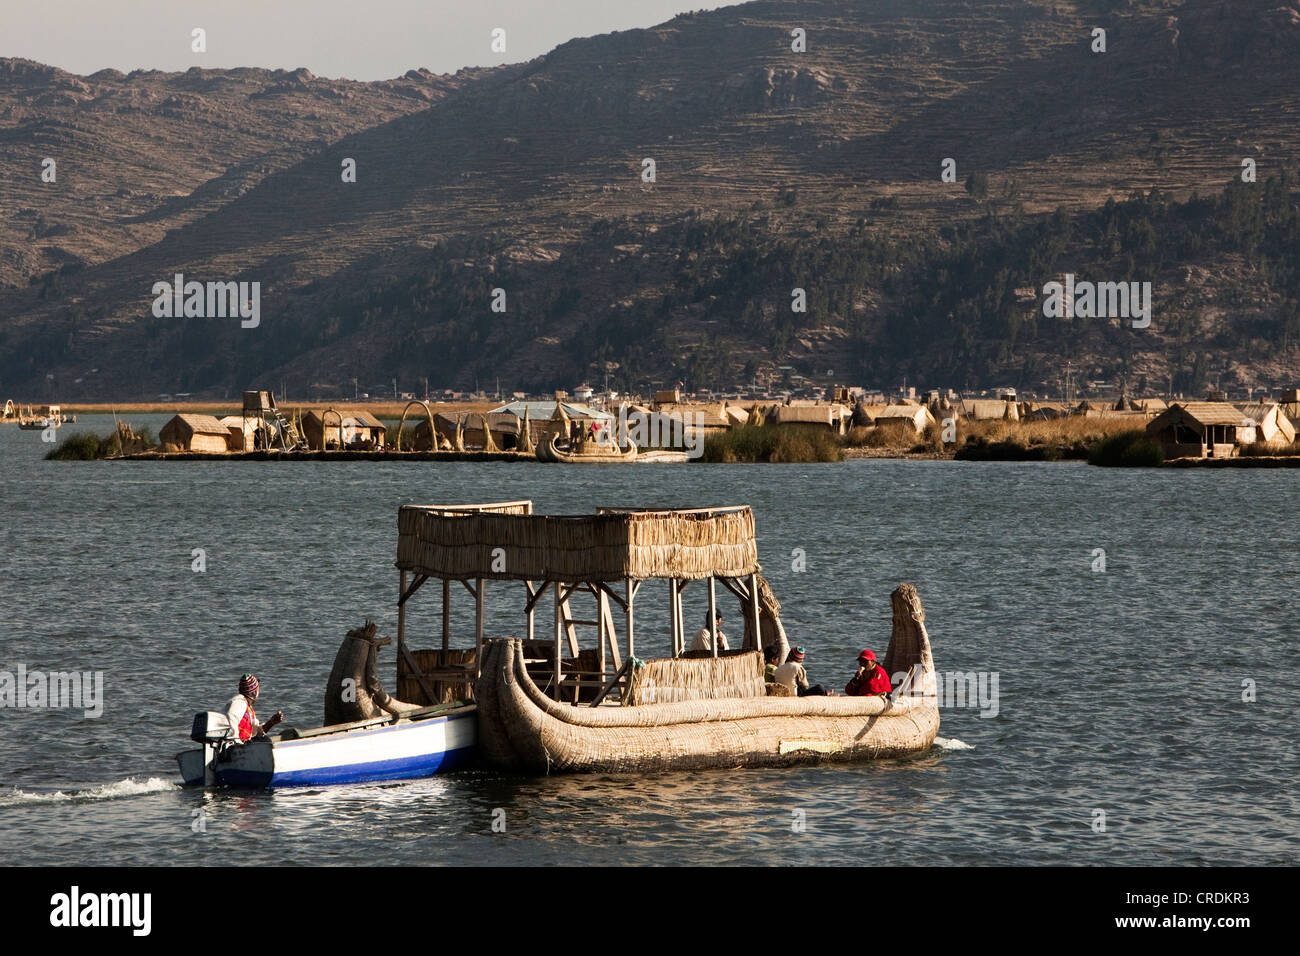 Reed traditionnel voile qui est poussé par un bateau motorisé, îles flottantes de l'Urus, sur le lac Titicaca, construit par les roseaux Banque D'Images